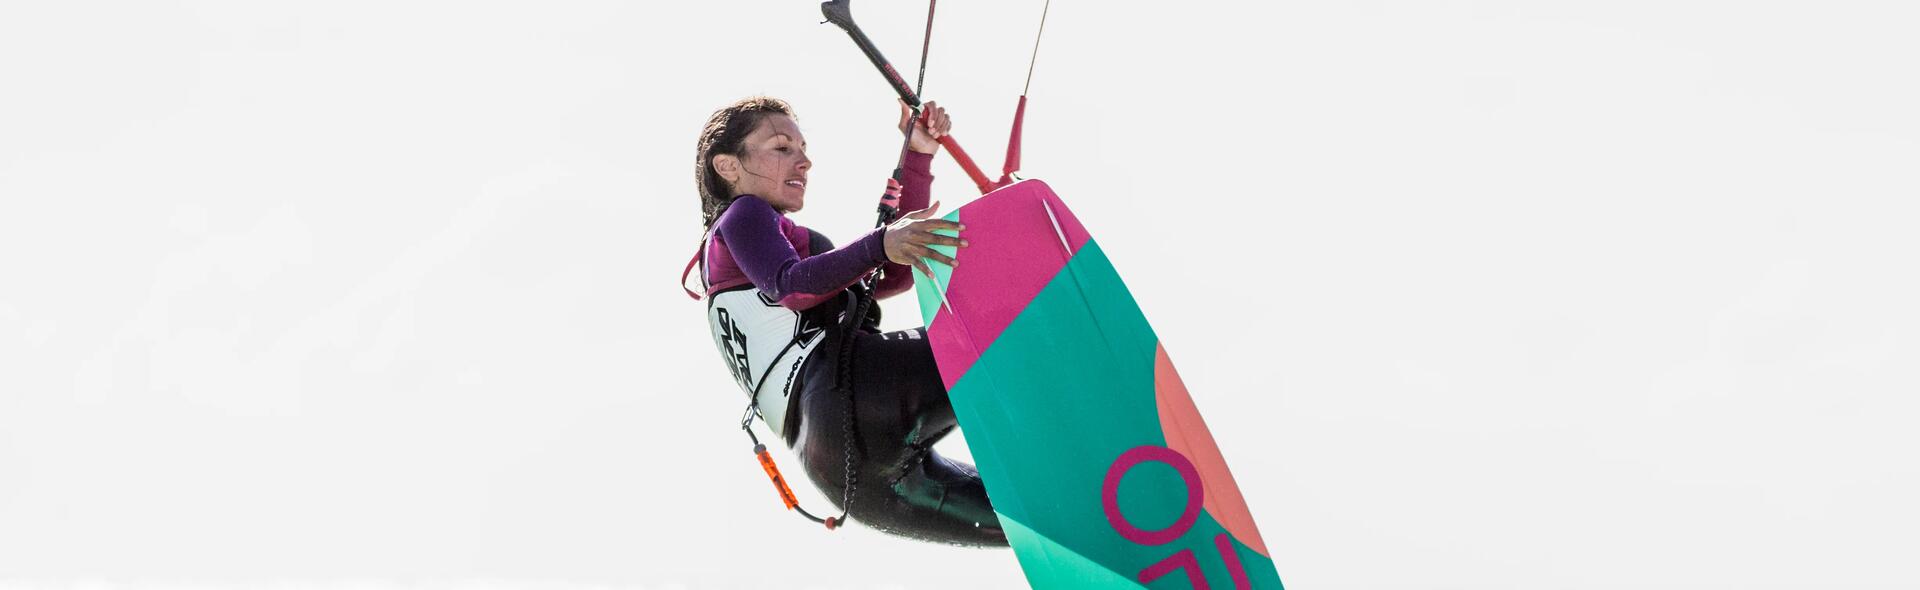 kobieta stroju pływackim uprawiająca kitesurfing